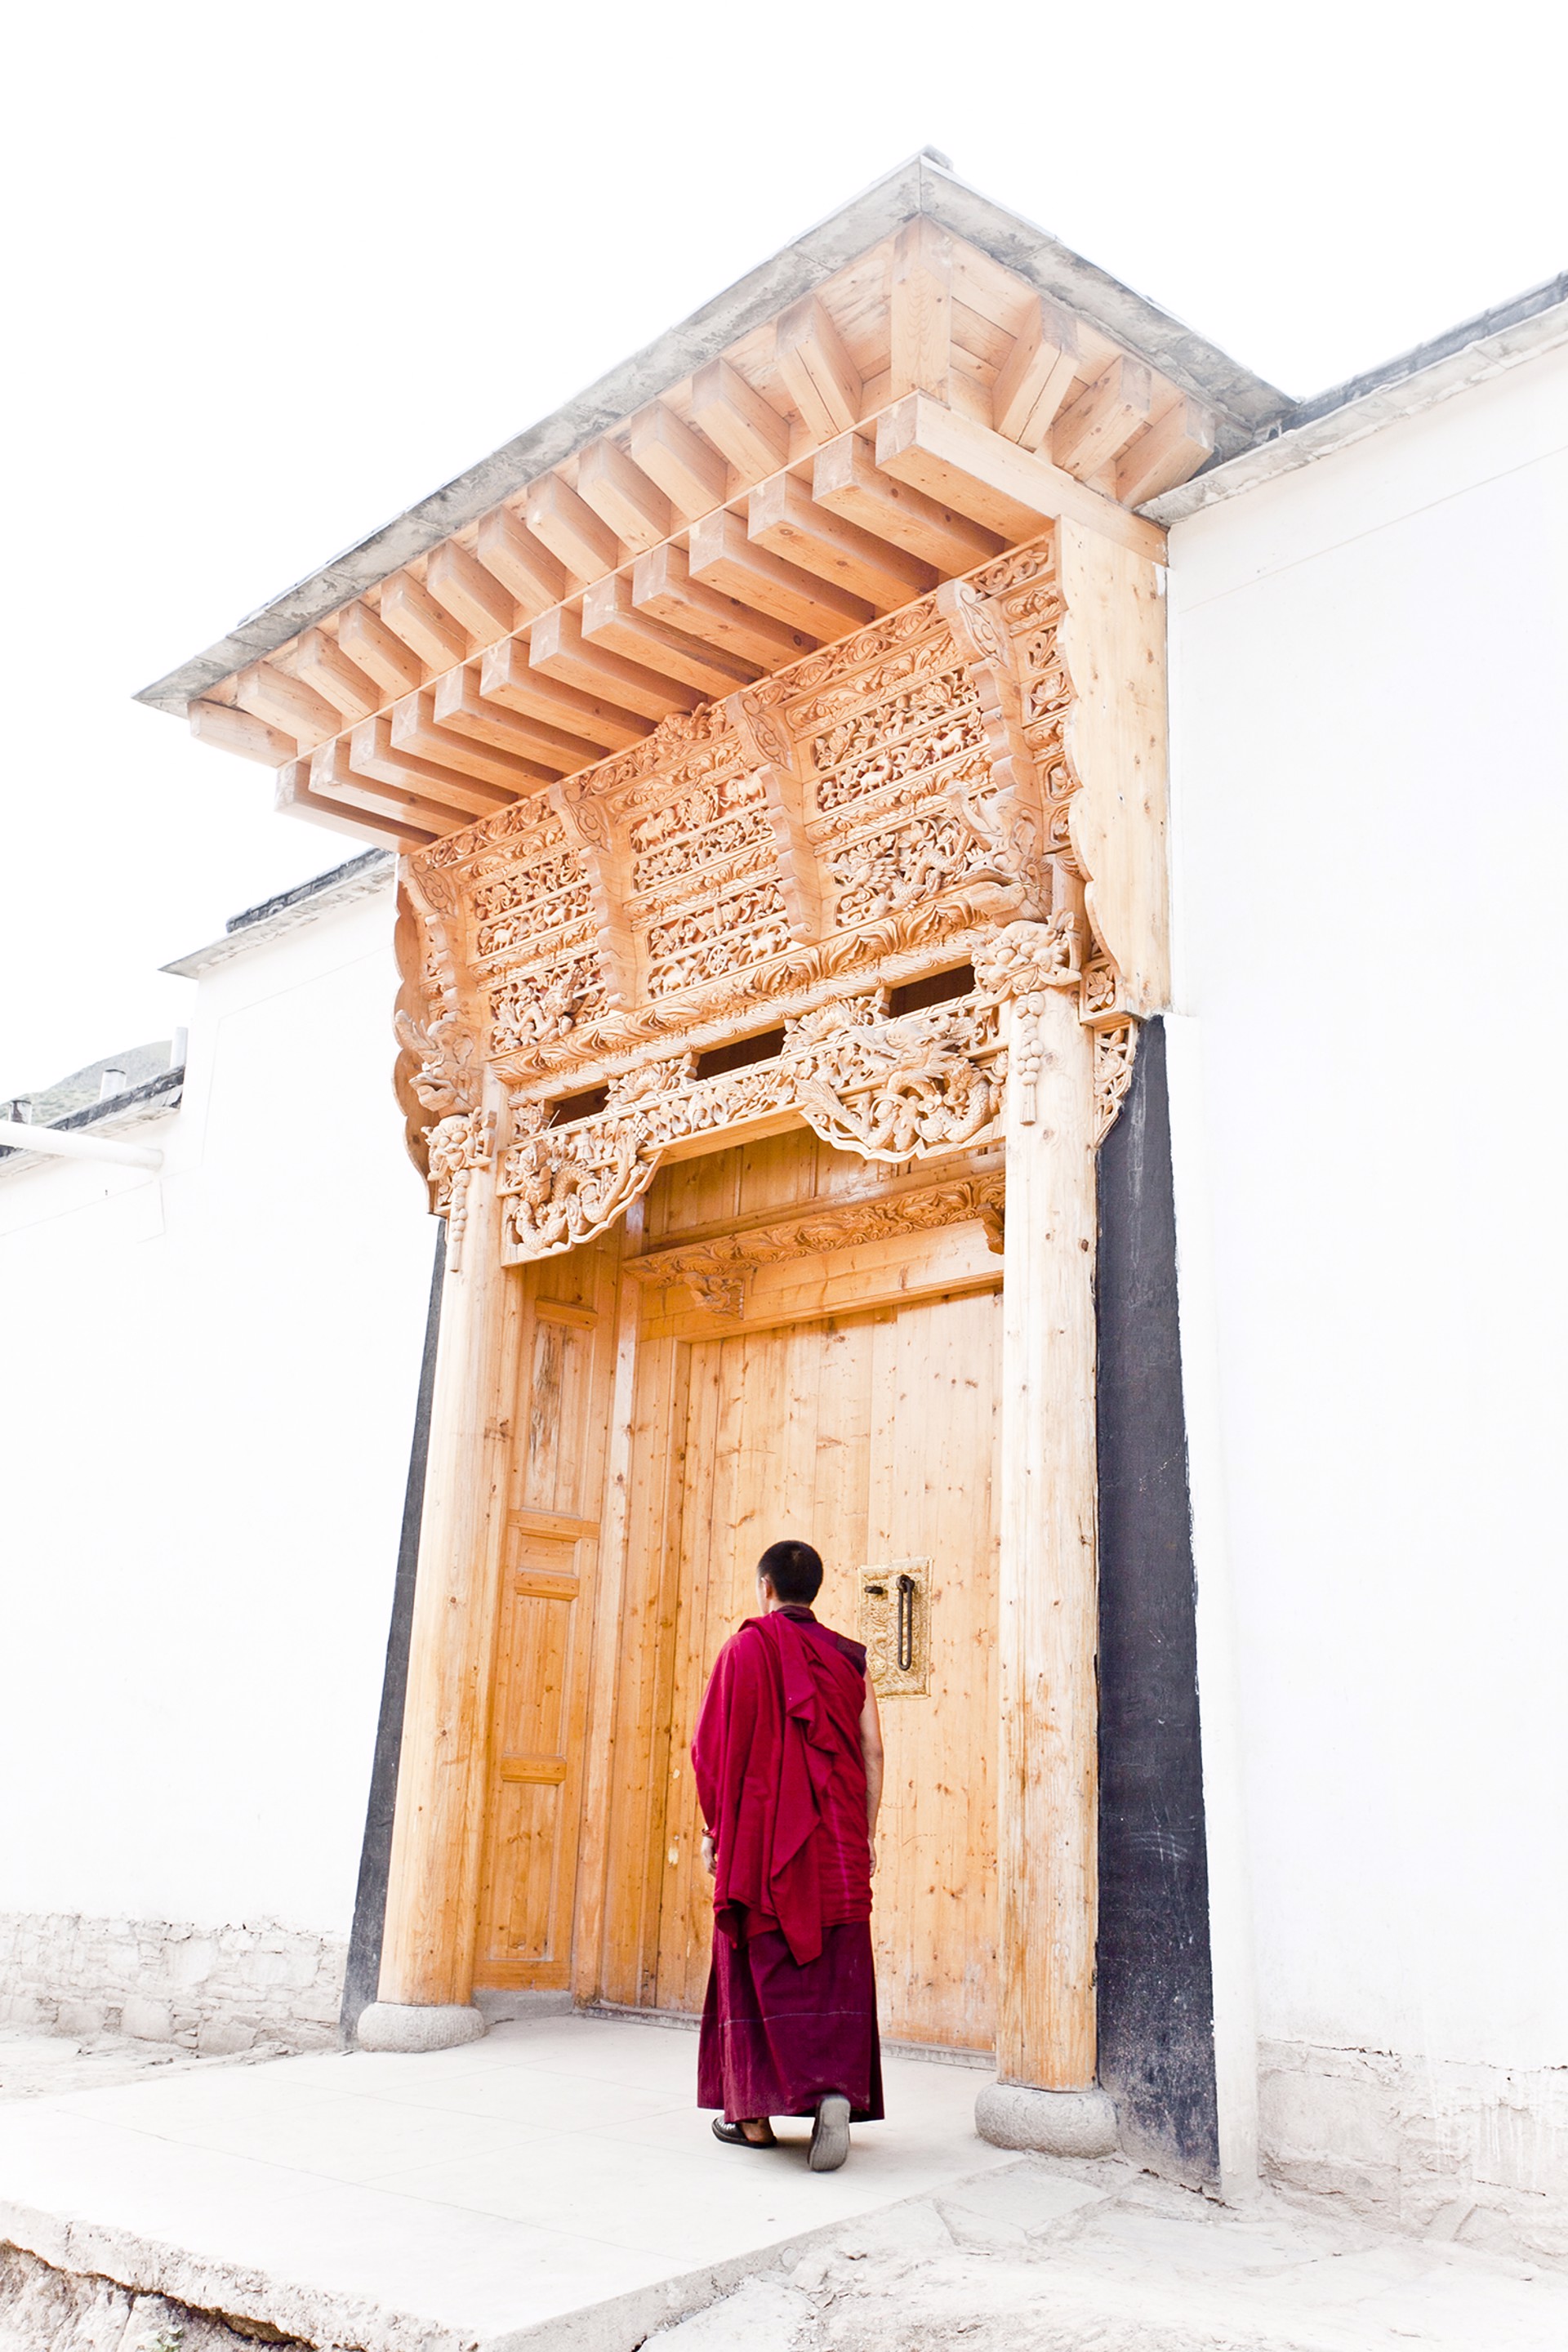 Gate - Labrang Gongba, Xiahe by Hsu-Jen Huang